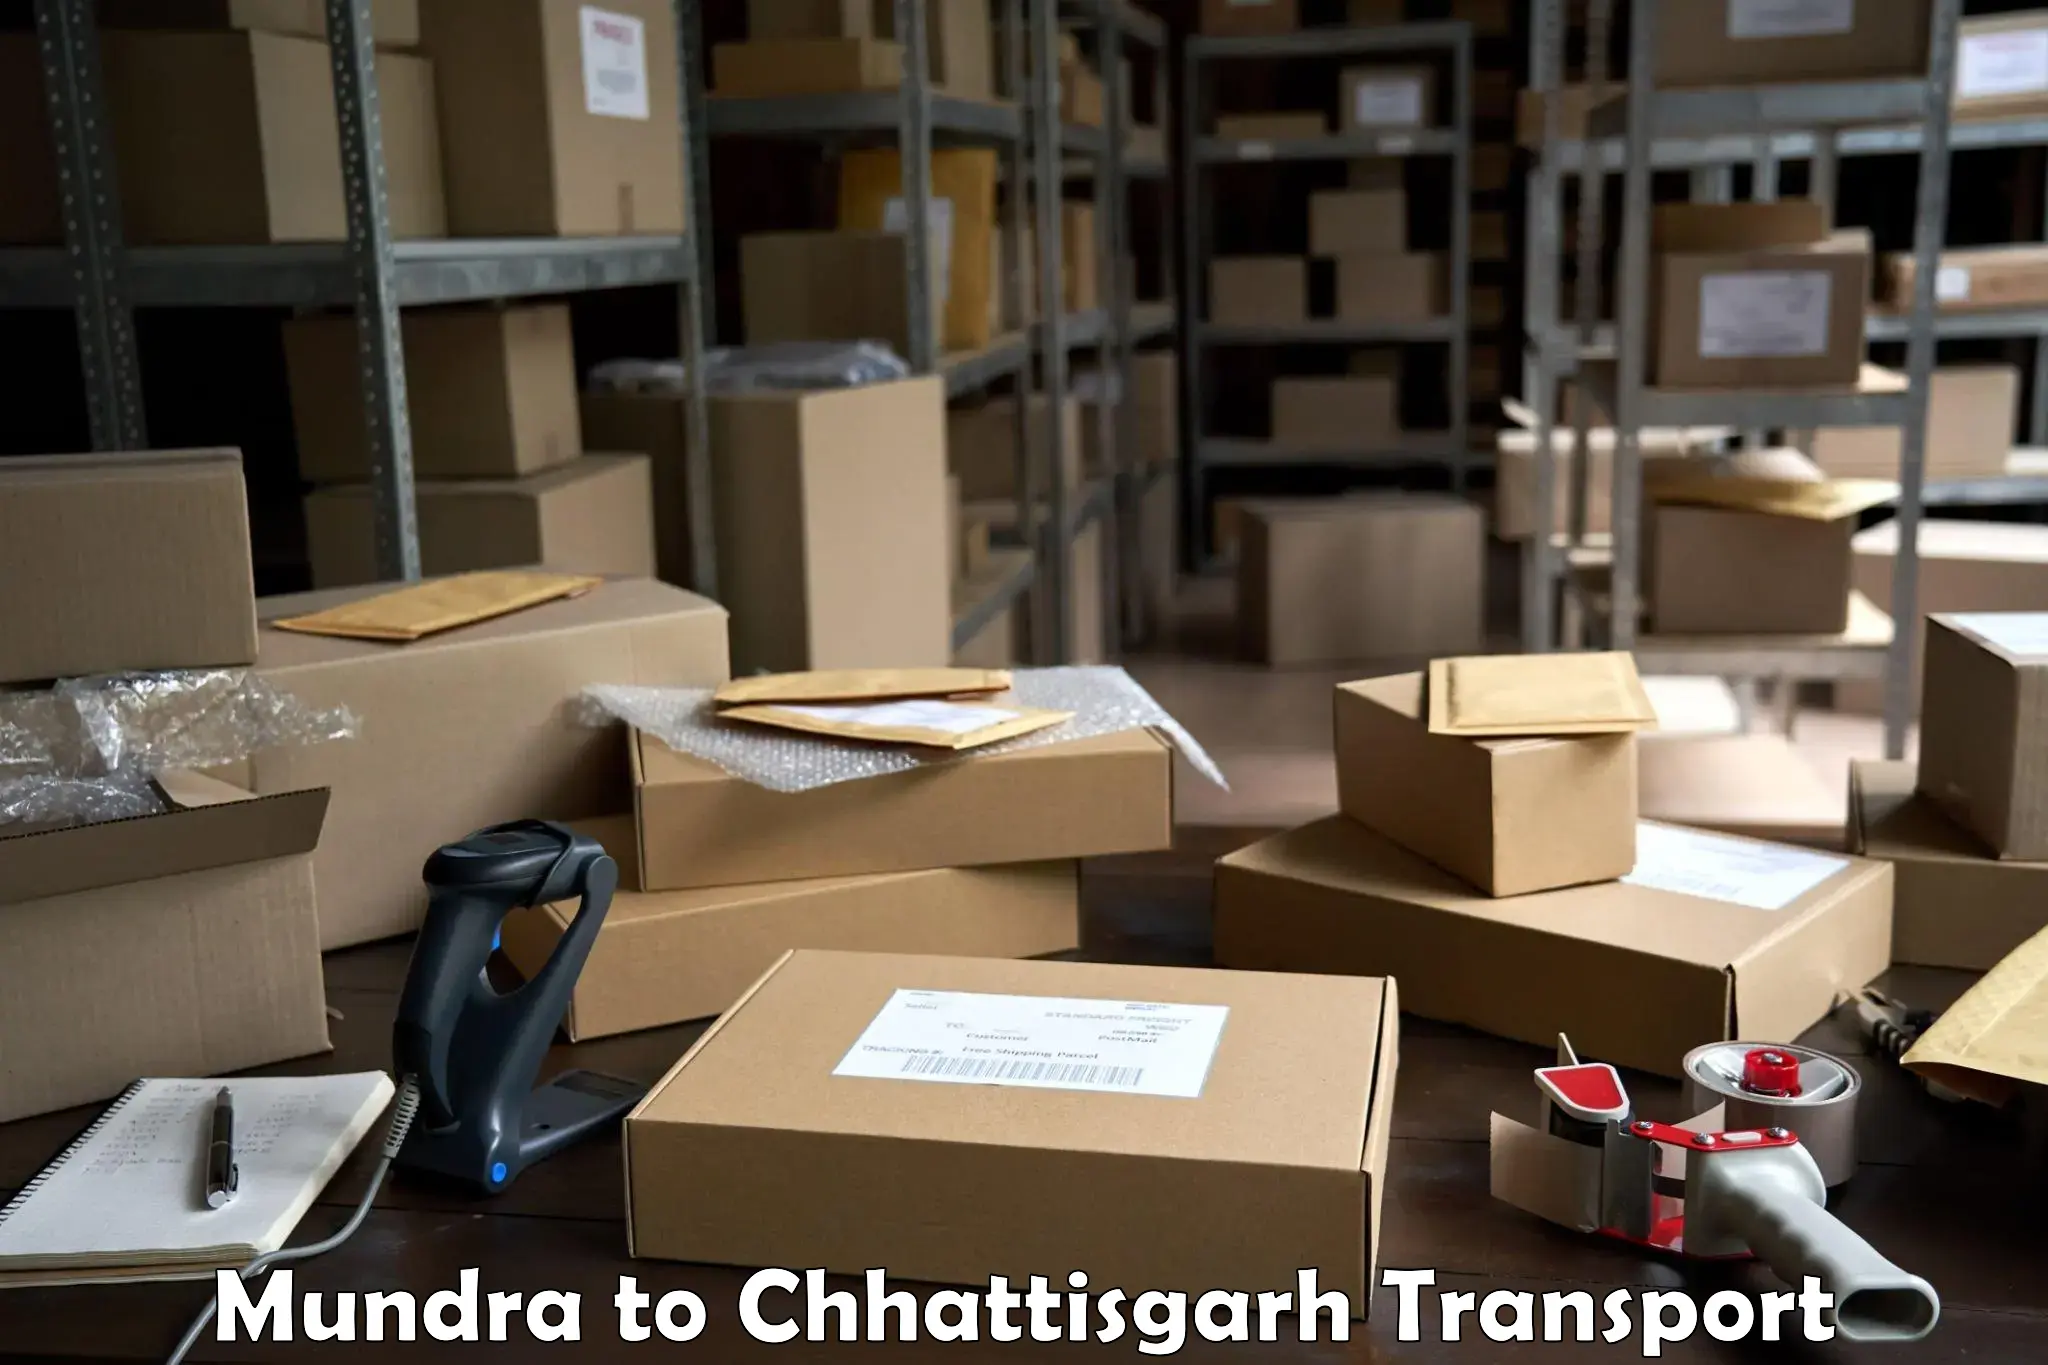 Truck transport companies in India Mundra to Wadrafnagar